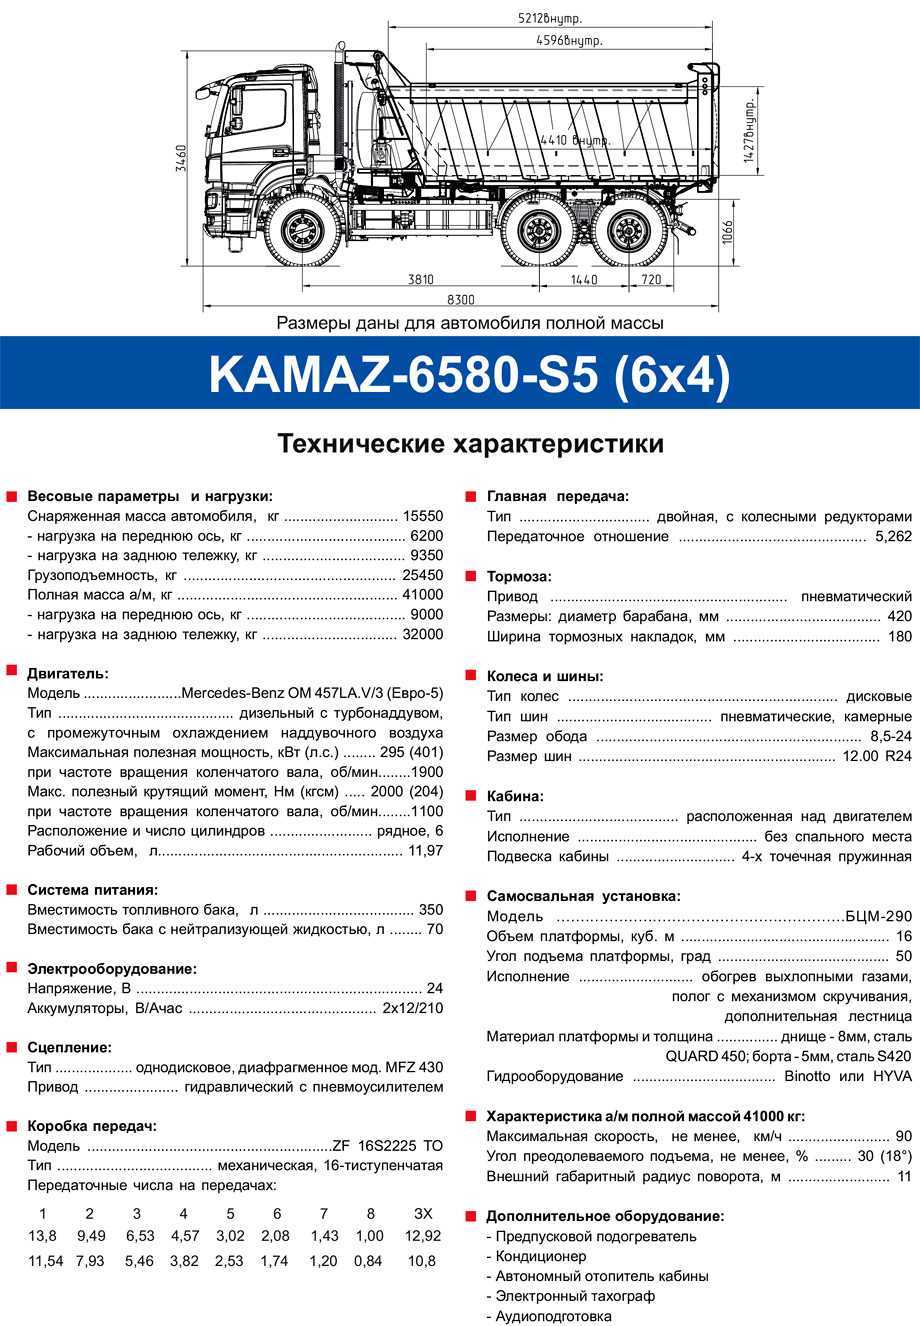 Камаз 6520-21010-43 "люкс" (6х4) - технические характеристики, фото и видео. обзор новой линейки 20 тонных автомобилей самосвалов камаз-6520 » журнал «все самосвалы»